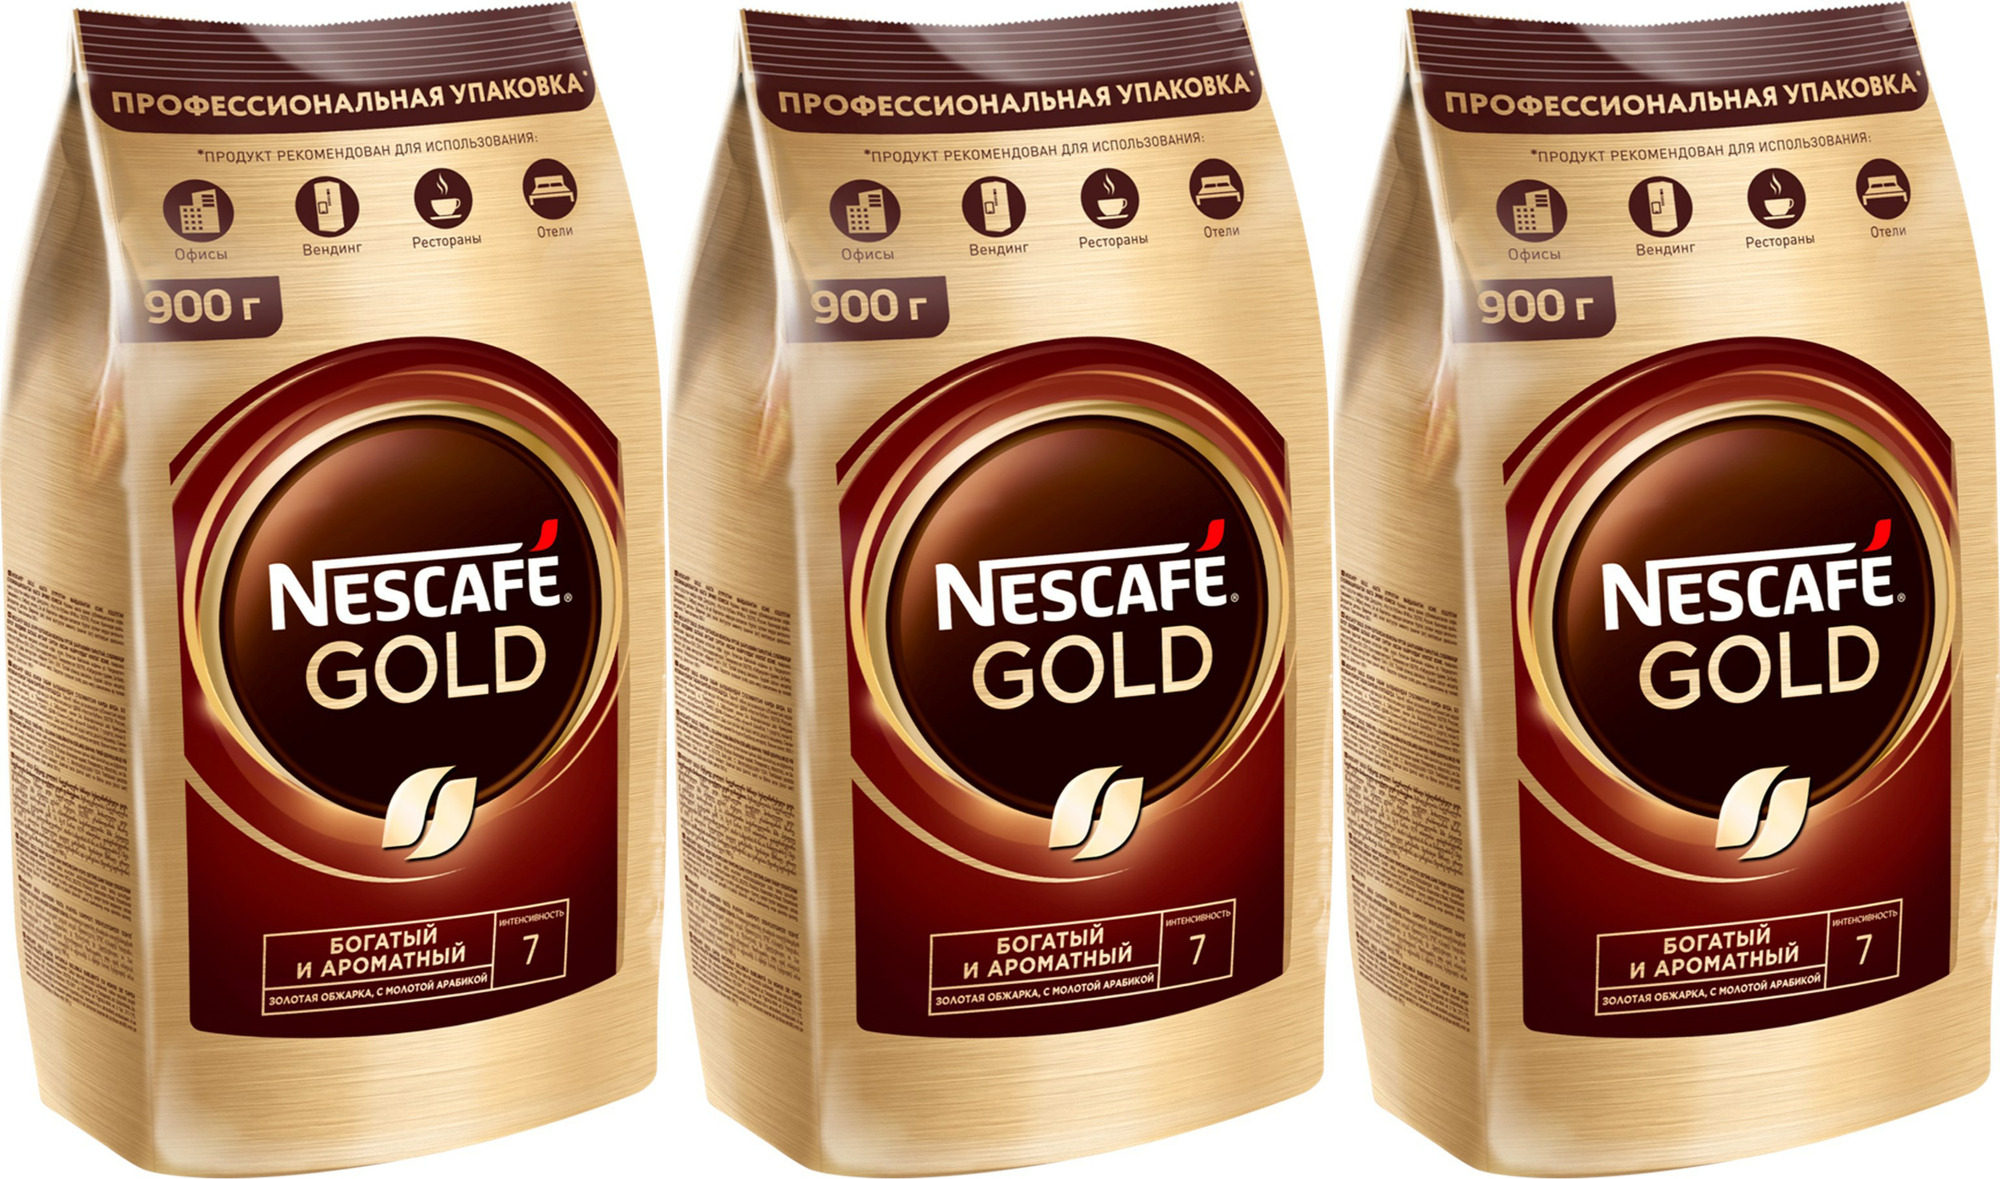 Nescafe gold растворимый 900. Нескафе Голд 900. Нескафе Голд 900 гр. Кофе растворимый Нескафе Голд. Кофе Нескафе Голд 900г.